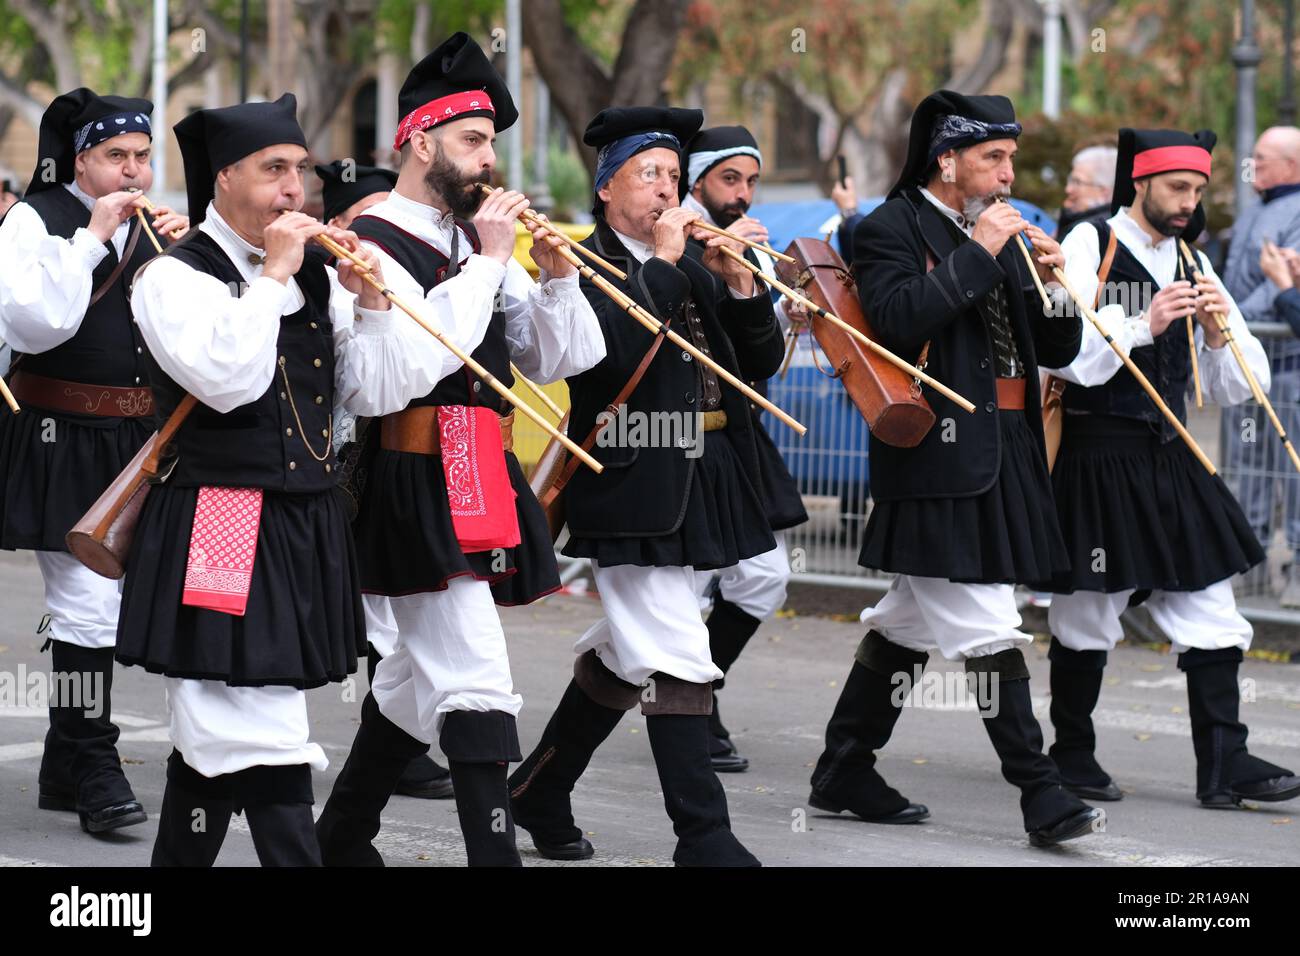 Sardinier, die traditionelle Holzflöten, auch bekannt als Launeddas,  spielen, nehmen an der Parade des Saint Efisio Feast Teil Stockfotografie -  Alamy